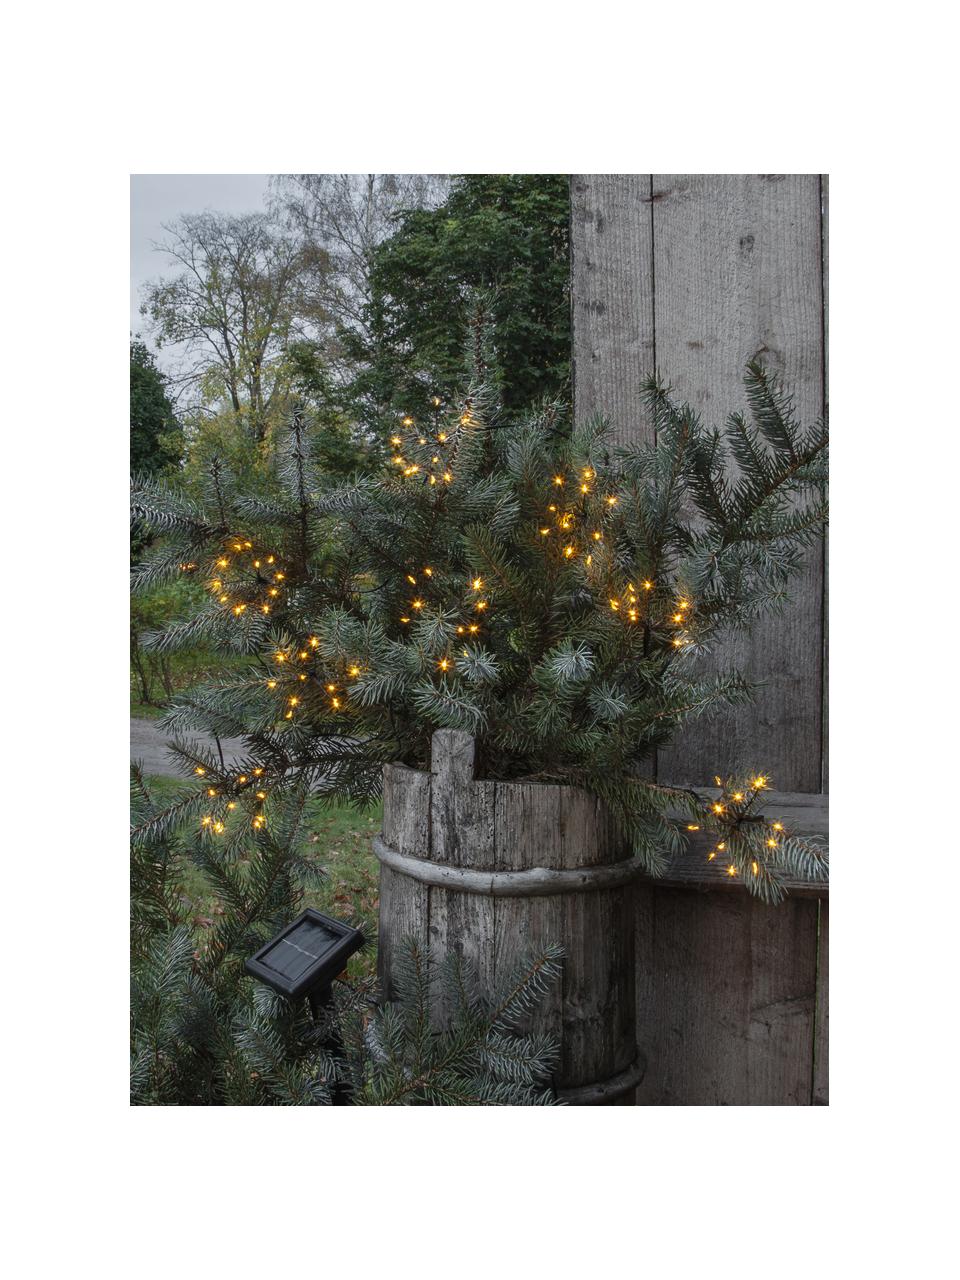 Solarna girlanda świetlna Firework, 210 cm i 96 lampionów, Transparentny, czarny, D 210 cm